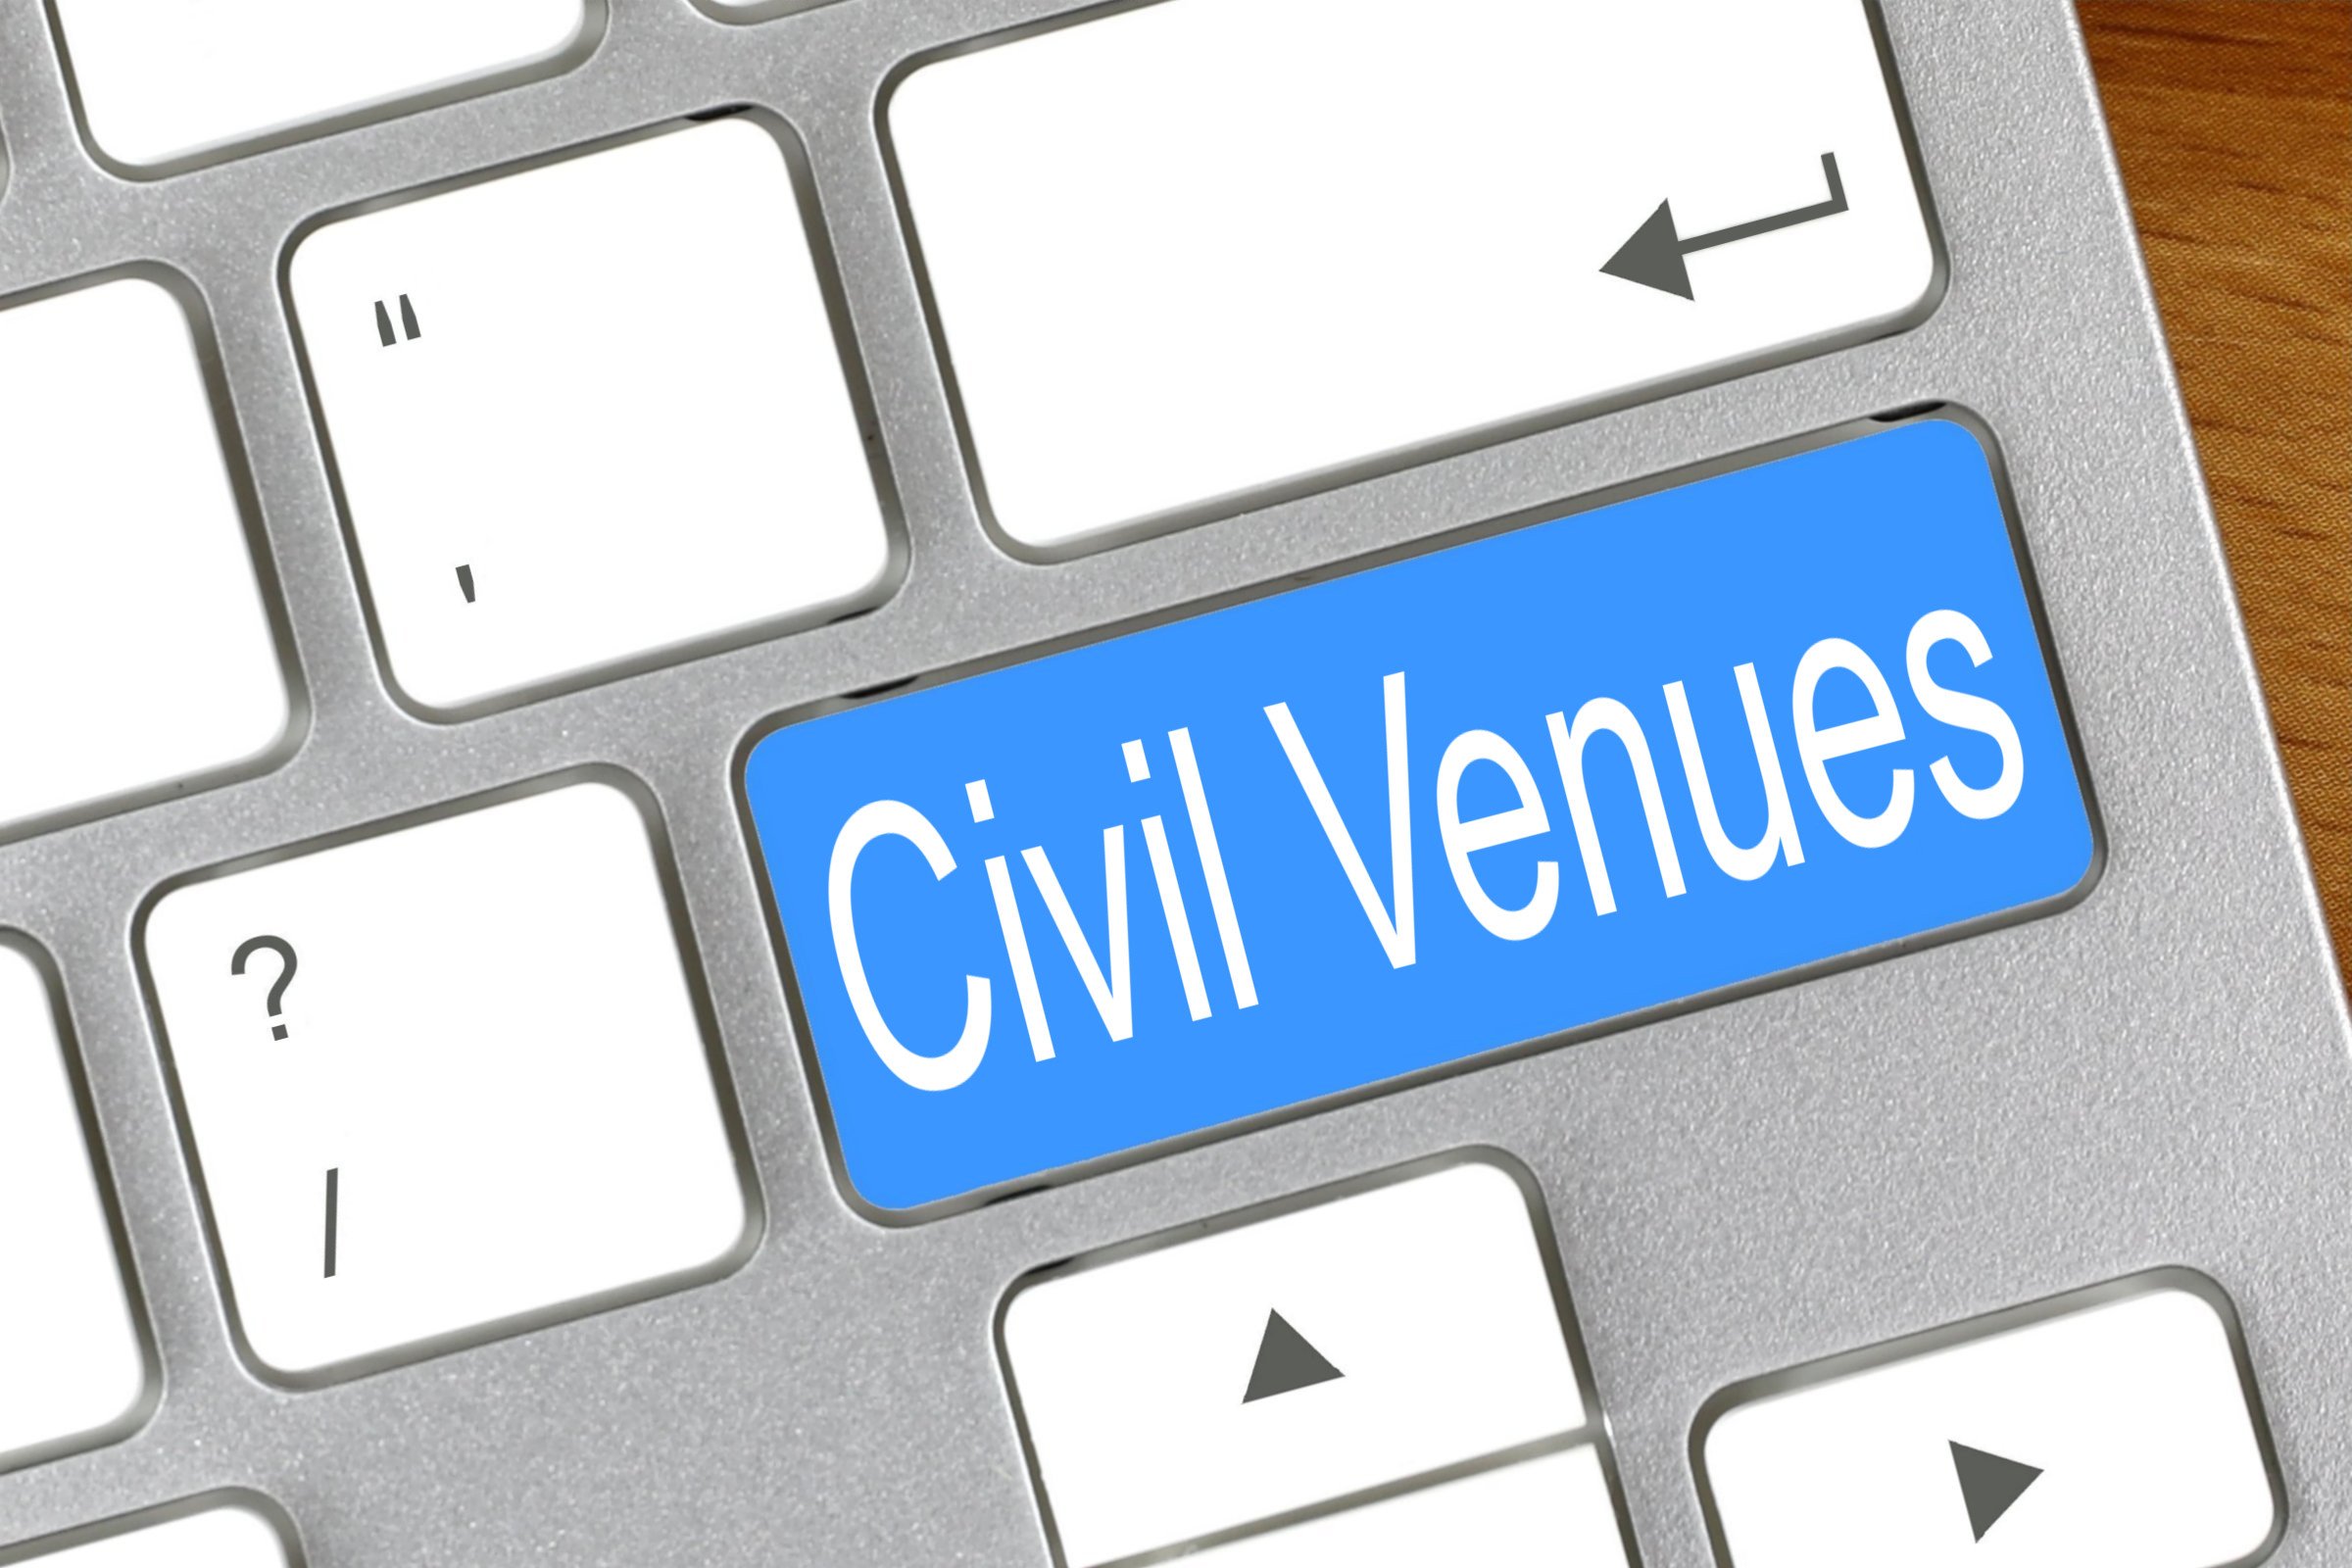 civil venues